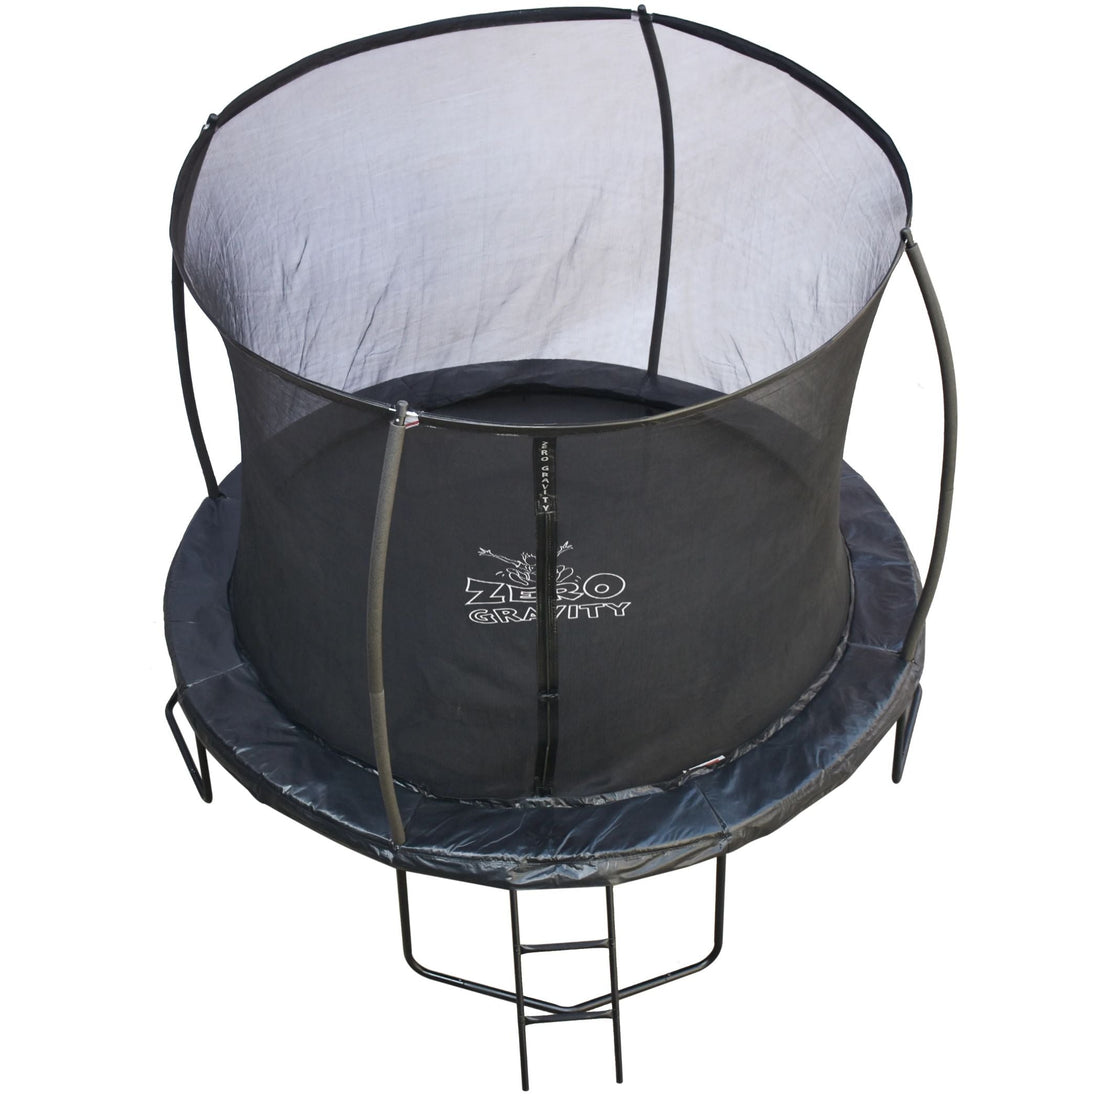 Trampolin (schwarz) Ø305cm inkl. Leiter - Nutzer bis 120kg - Ideal für bis zu 2 Kinder